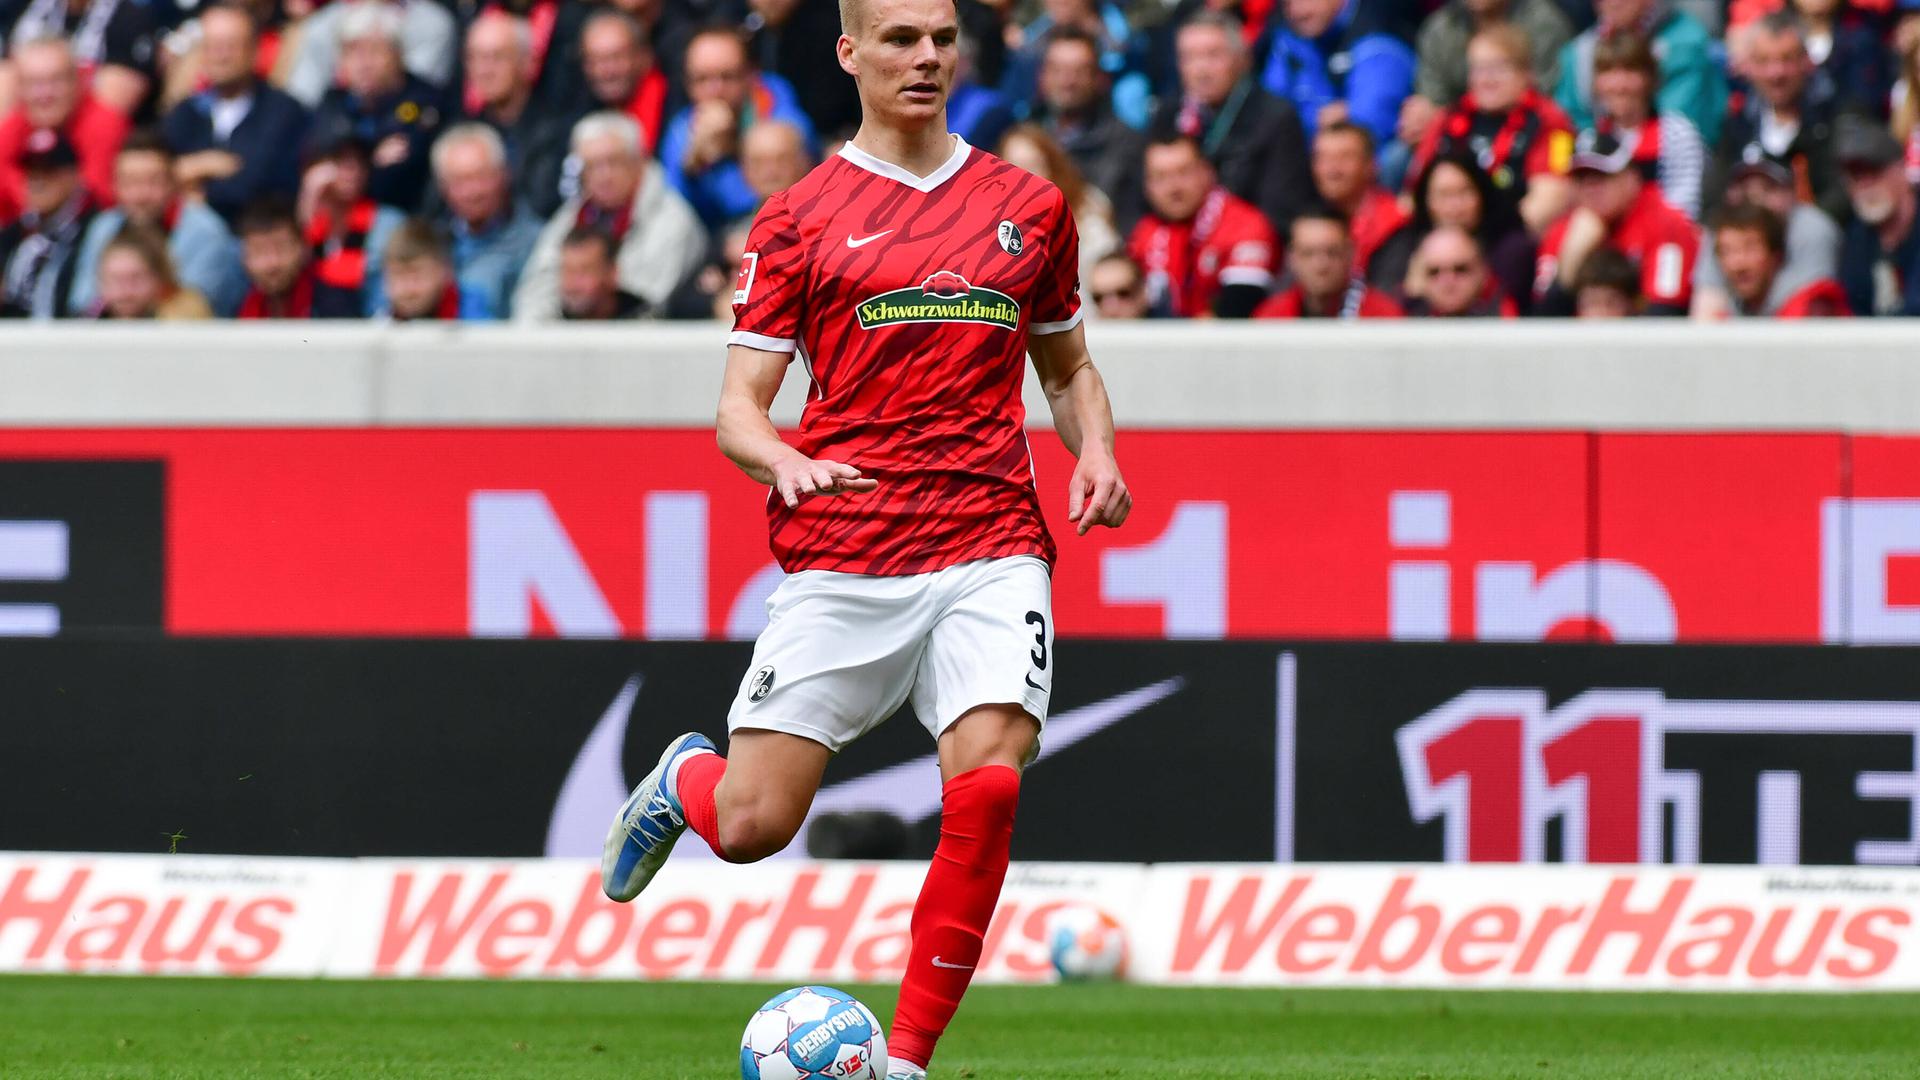 Starke Saison: Mit fünf Toren zählt Philipp Lienhart zu den offensivstärksten Innenverteidigern der Fußball-Bundesliga. Nun möchte er mit Freiburg den Pokal gewinnen.